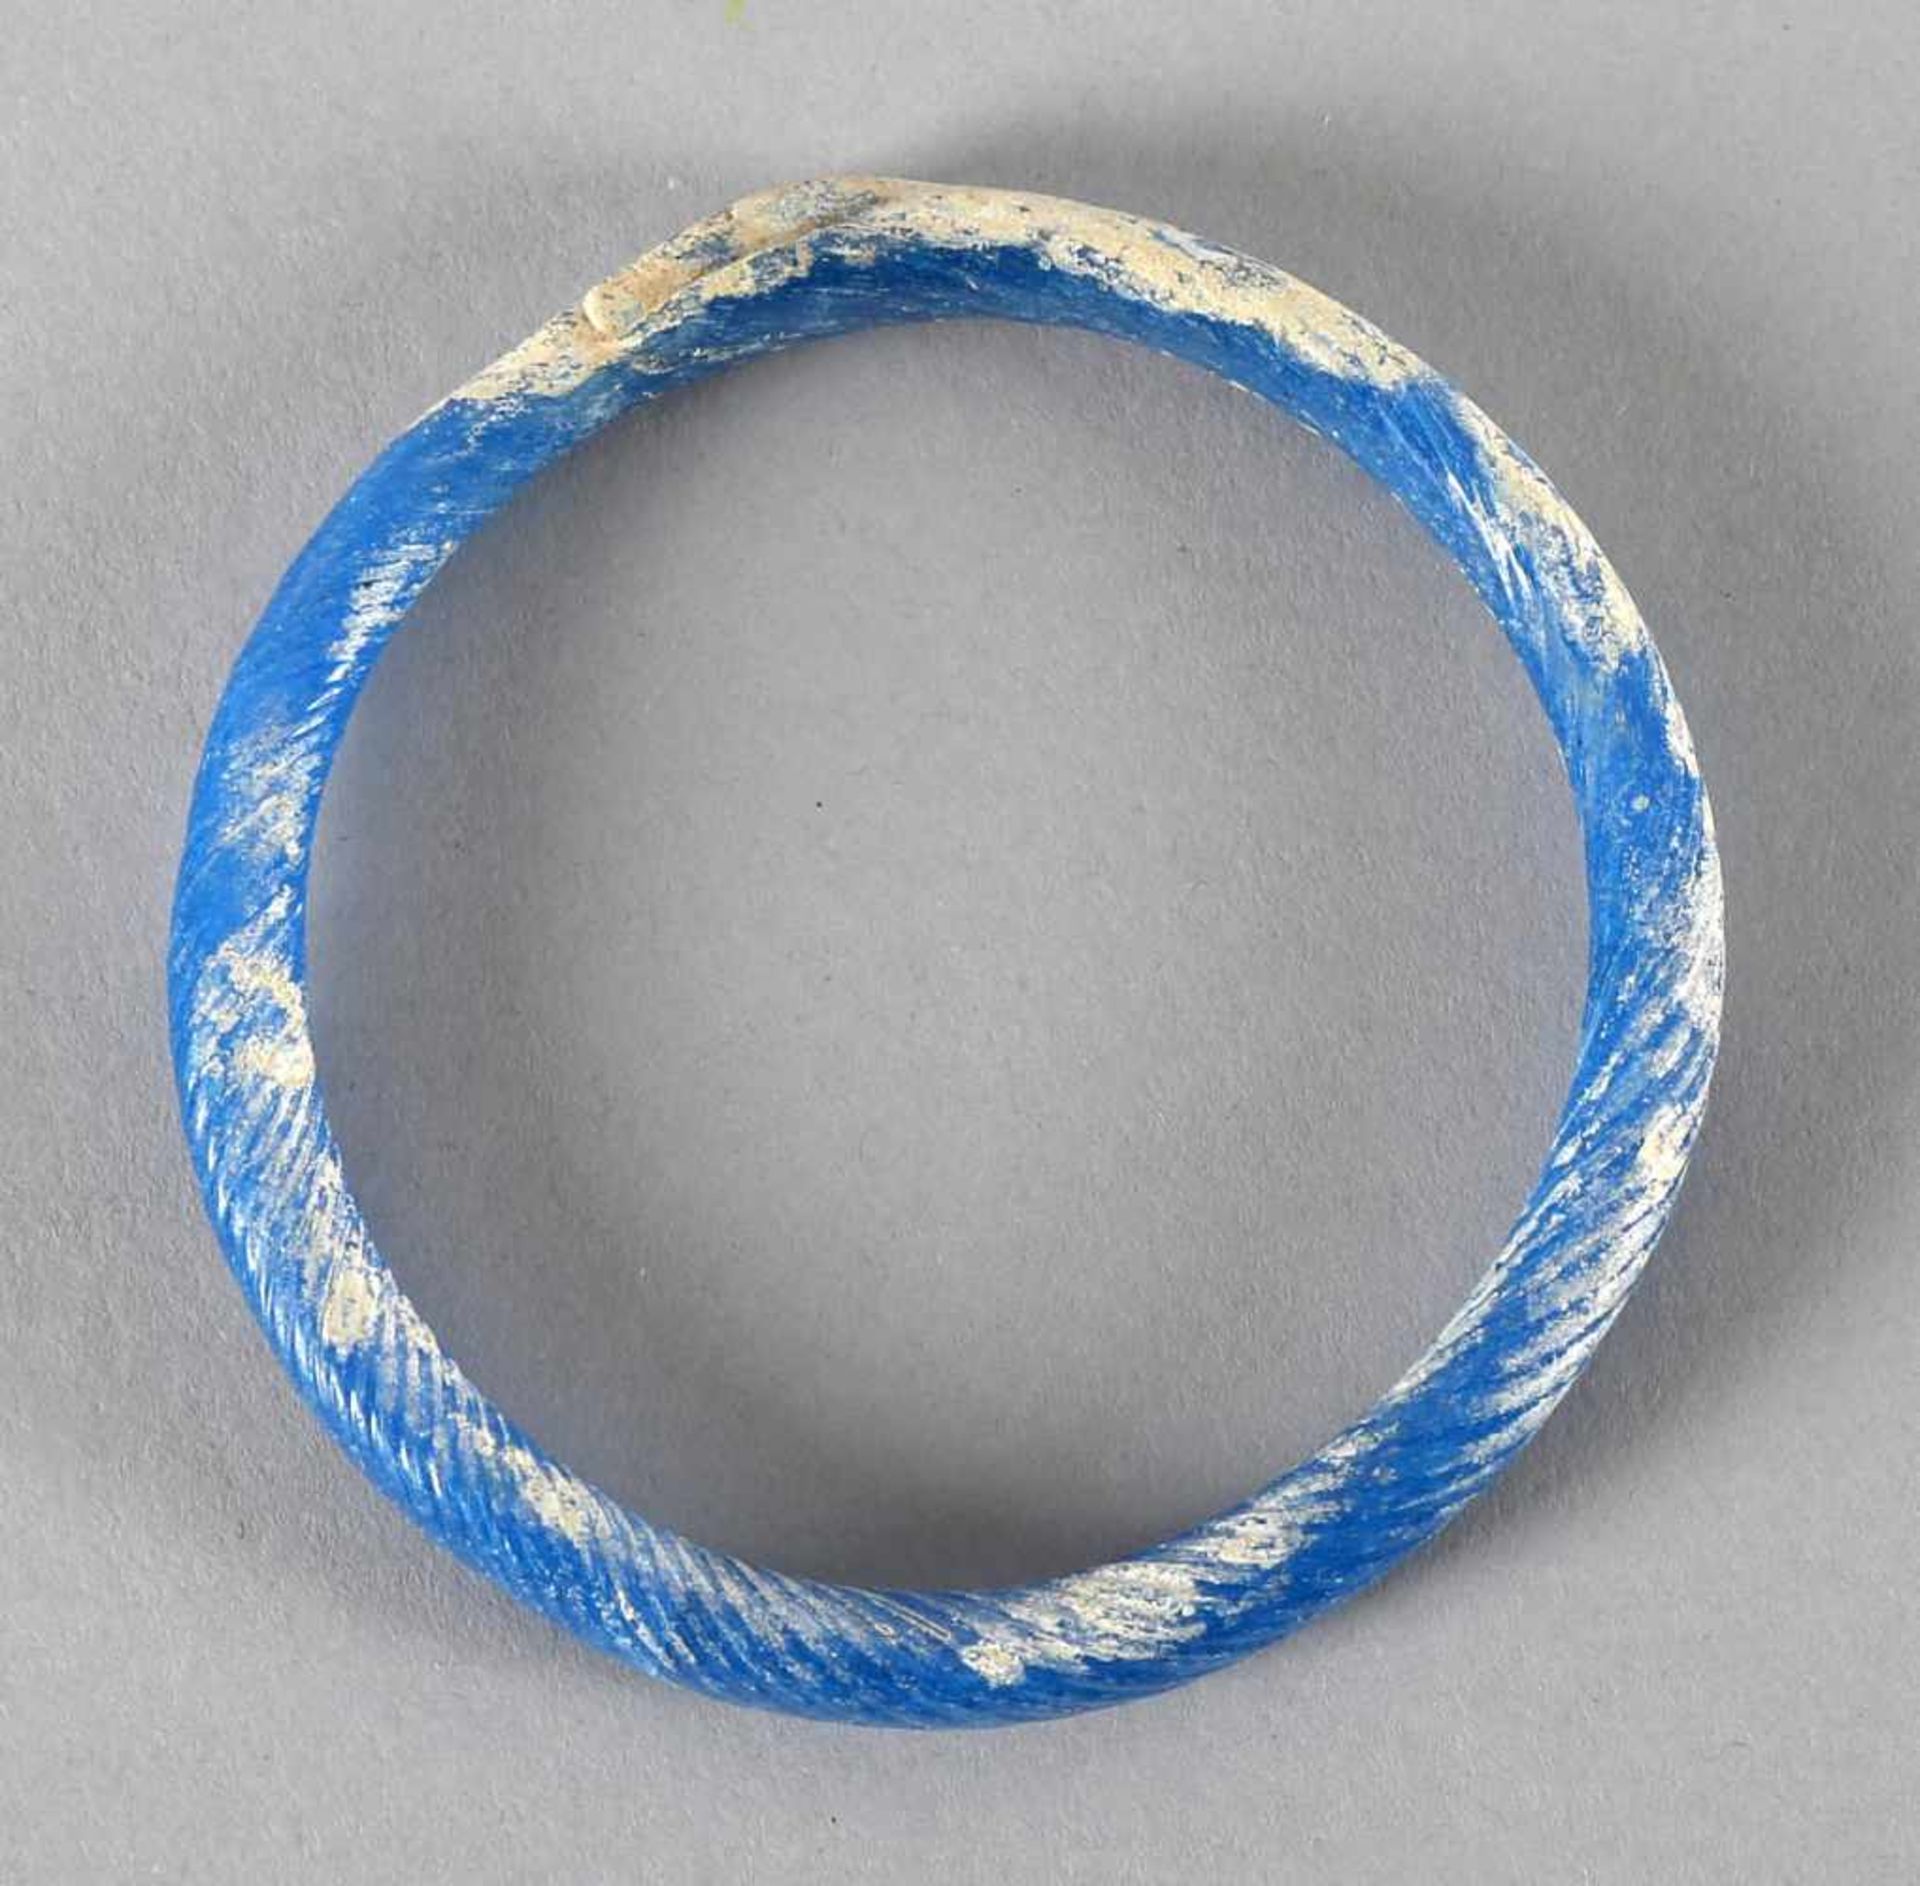 Armreif aus blauem Glas, wohl römisch, 1. - 3. Jh.spiralförmig gewickelt, monochrom runder